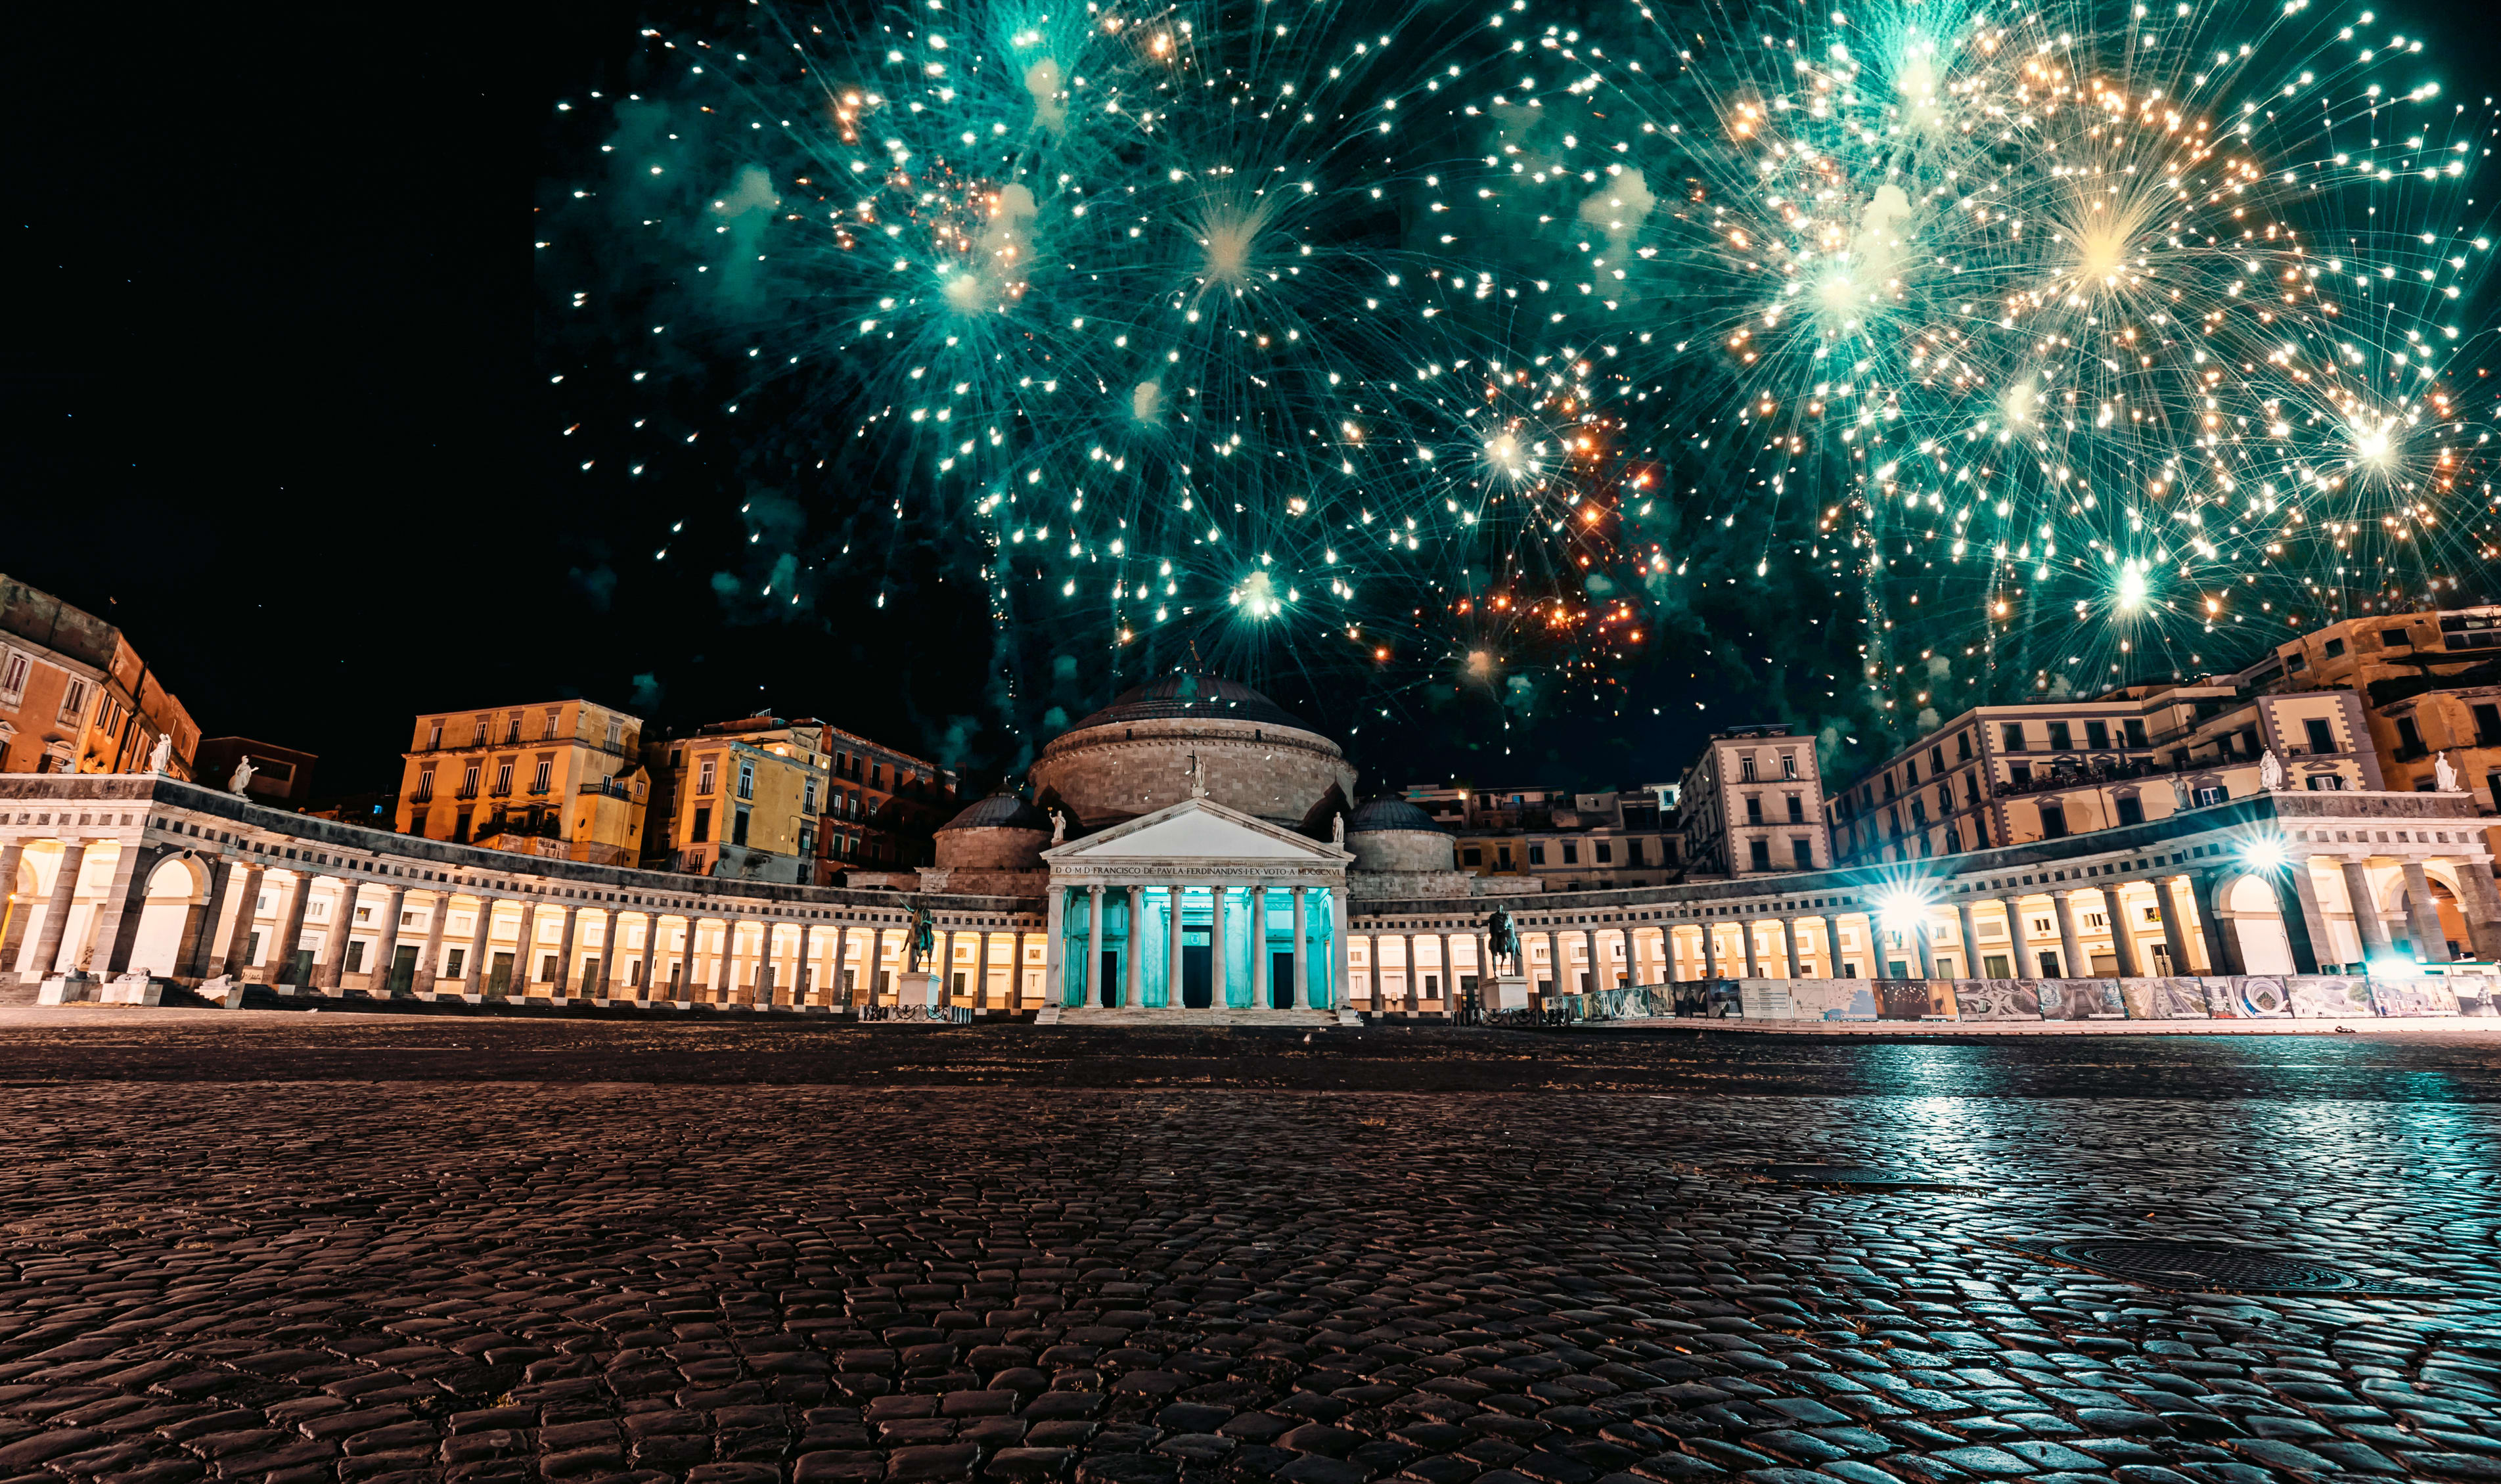 Capodanno a Napoli